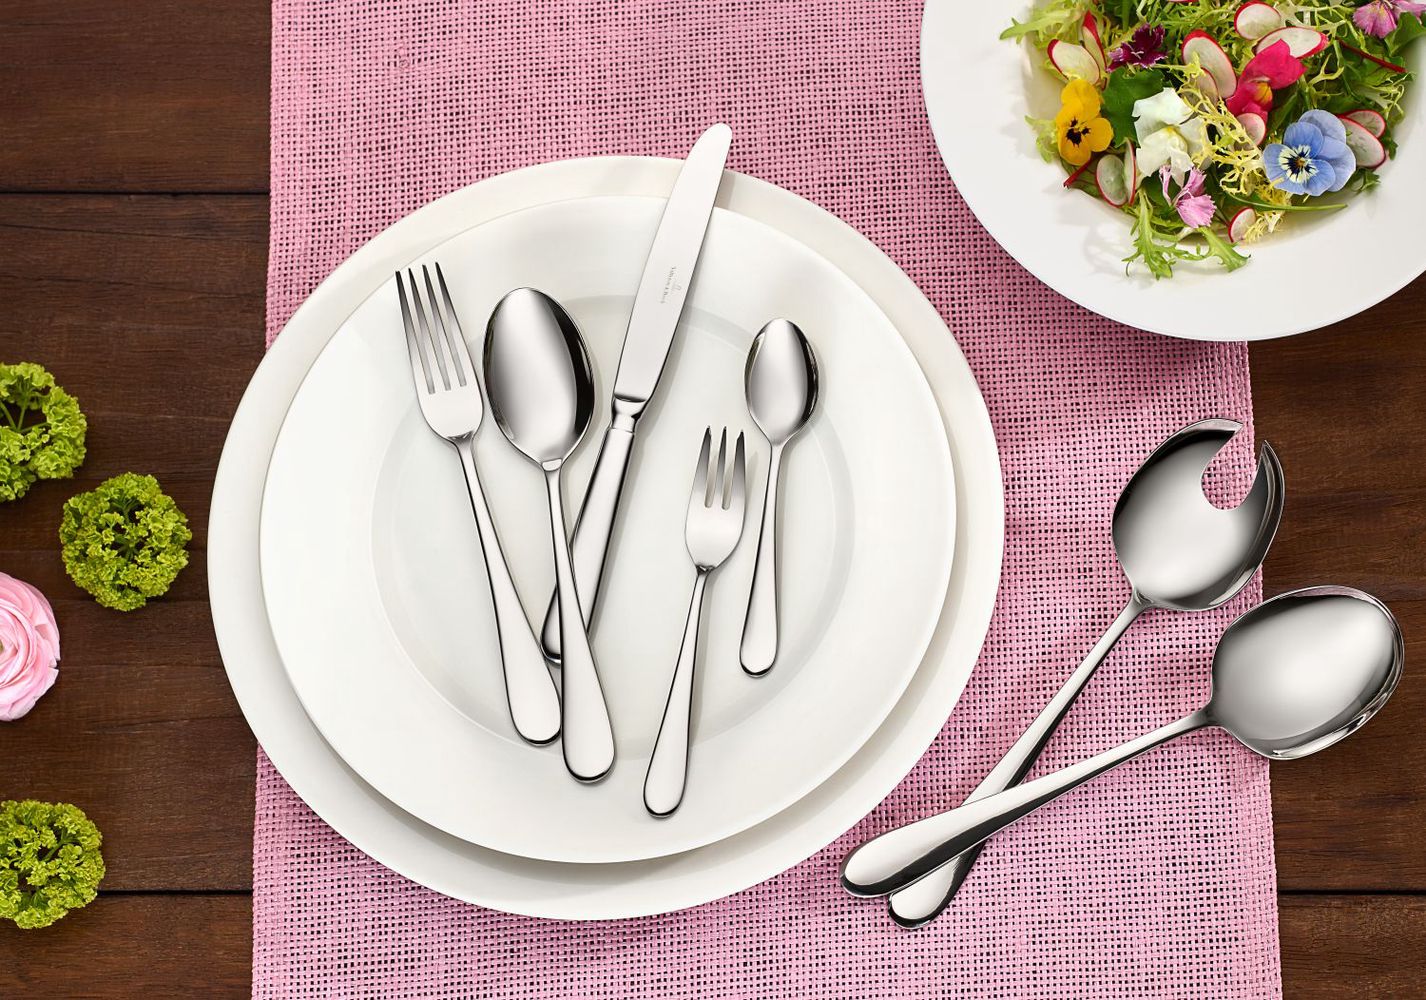 Elegantie Zeggen Mens Villeroy and Boch 68-Piece Cutlery Set Oscar | Buy now at Cookinglife